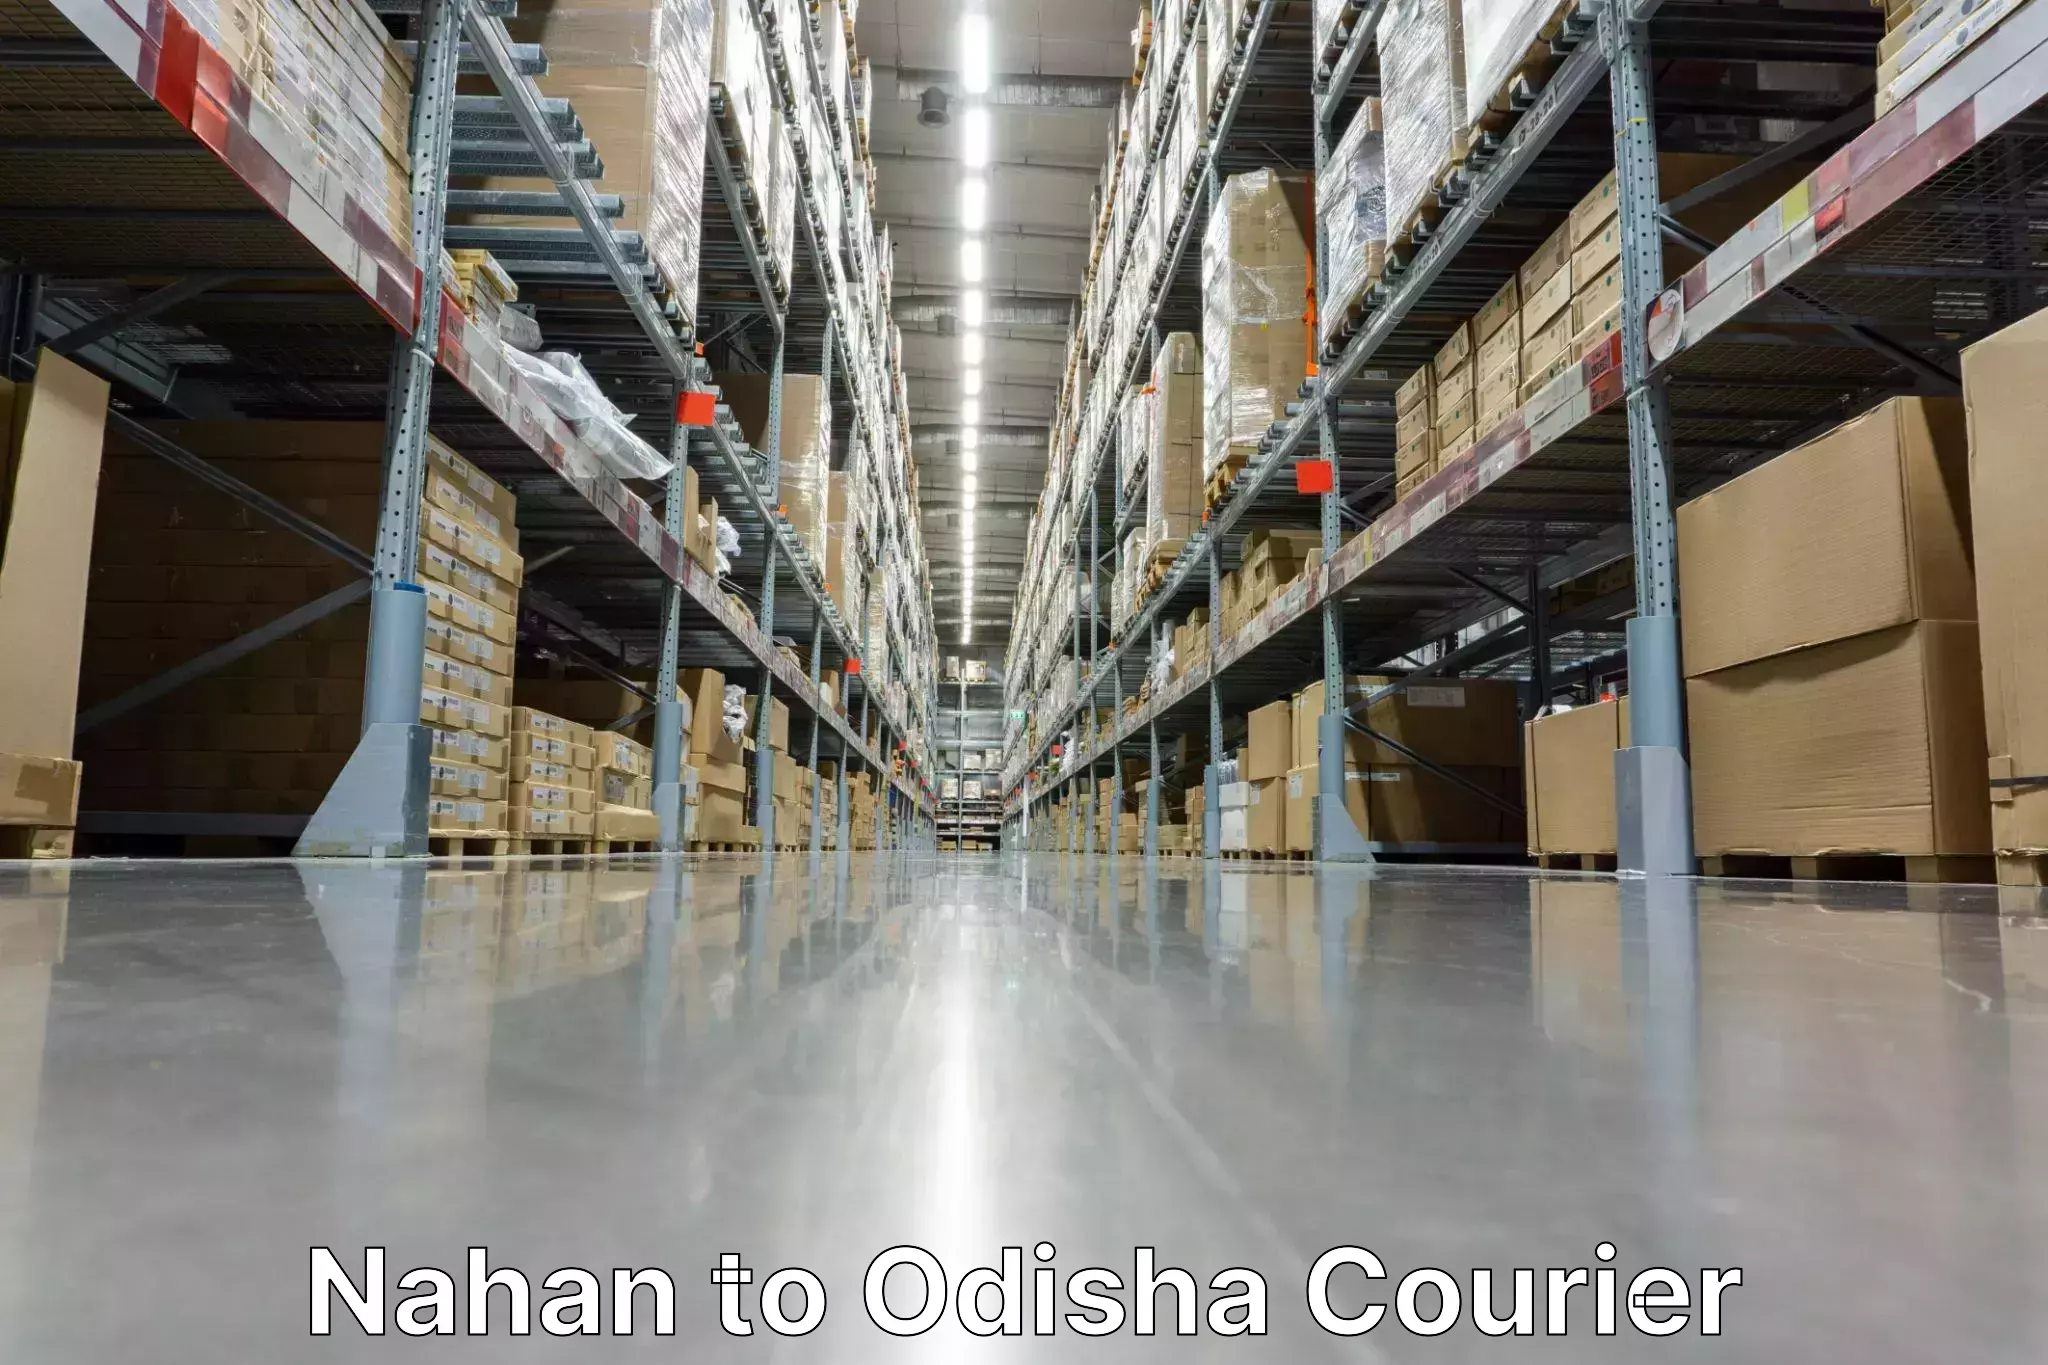 Courier service comparison Nahan to Odisha